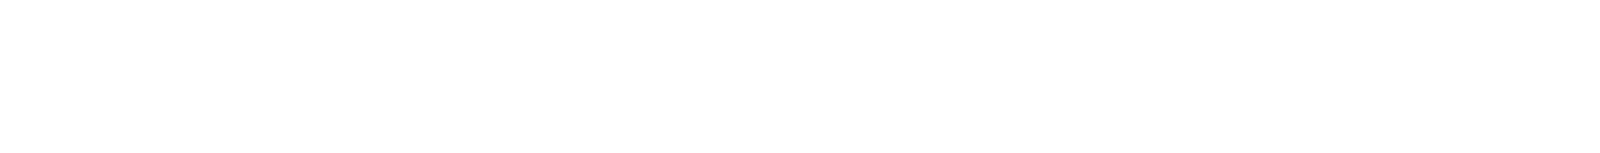 Ethan Allen
 Logo groß für dunkle Hintergründe (transparentes PNG)